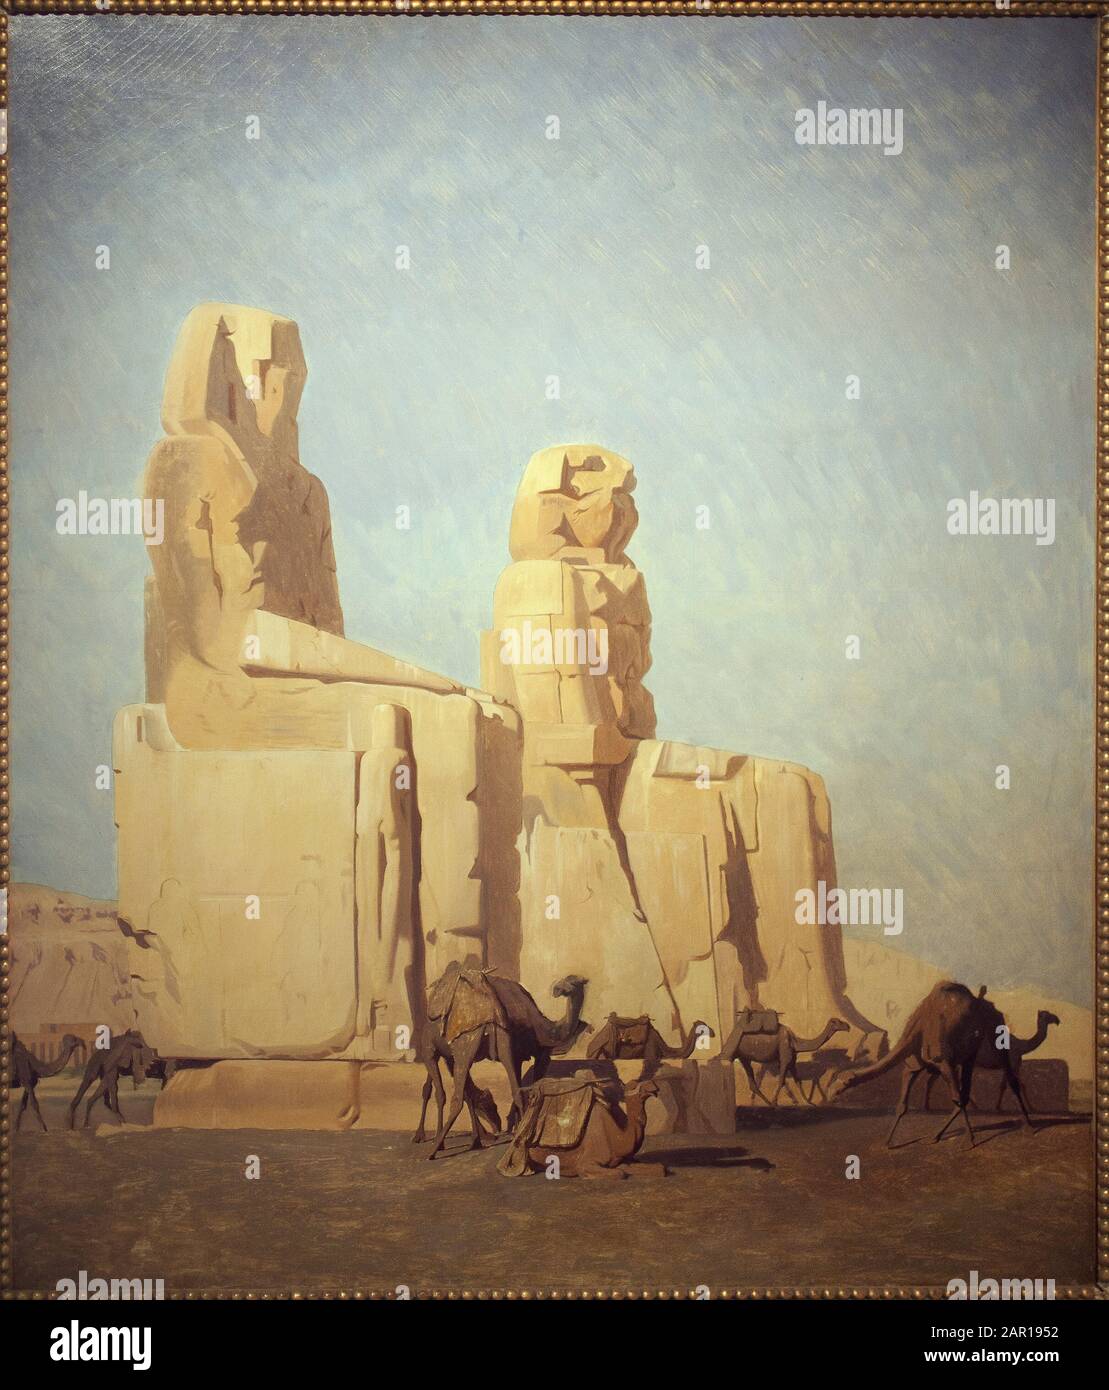 Les colosses de Thebes, Memnon et Sesostris. Etude. Peinture de Jean Leon Gerome (1824-1904), huile sur toile, 1856. Art francais, 19e siecle, orienta Stock Photo